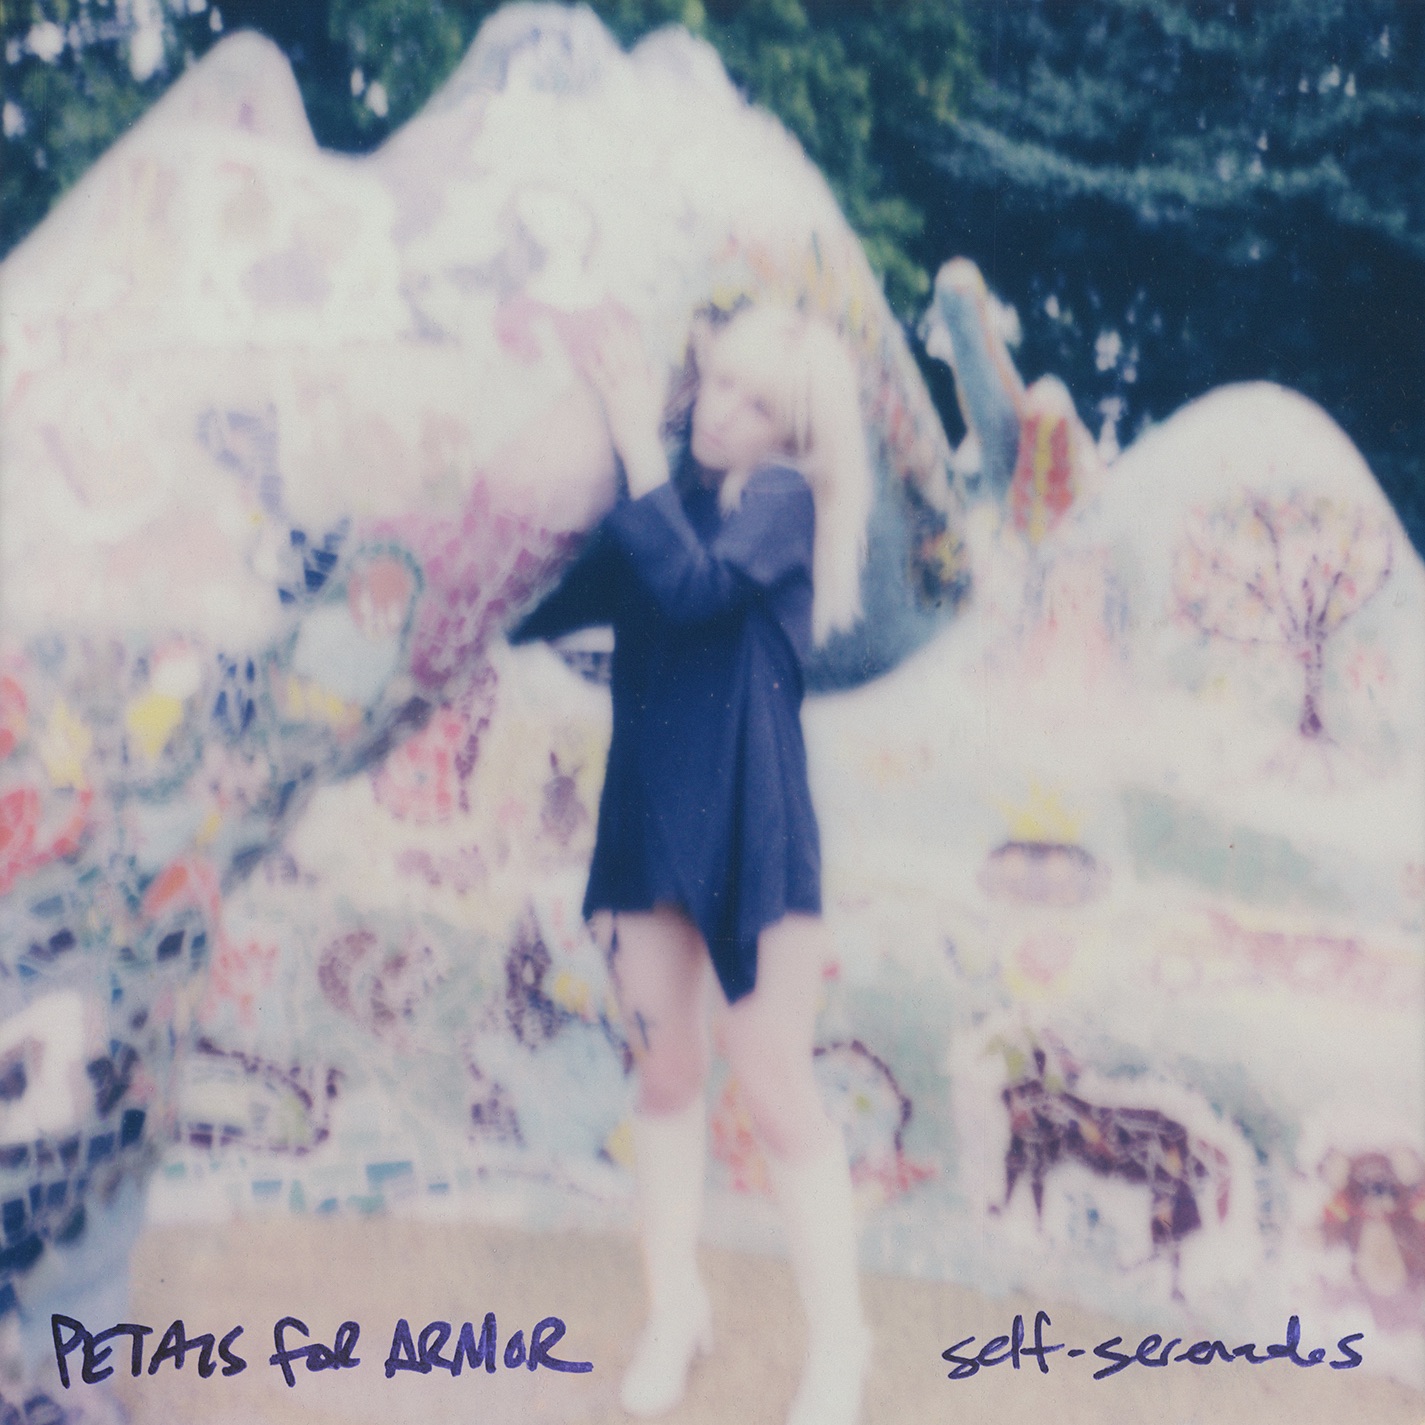 Hayley Williams - Petals For Armor: Self-Serenades